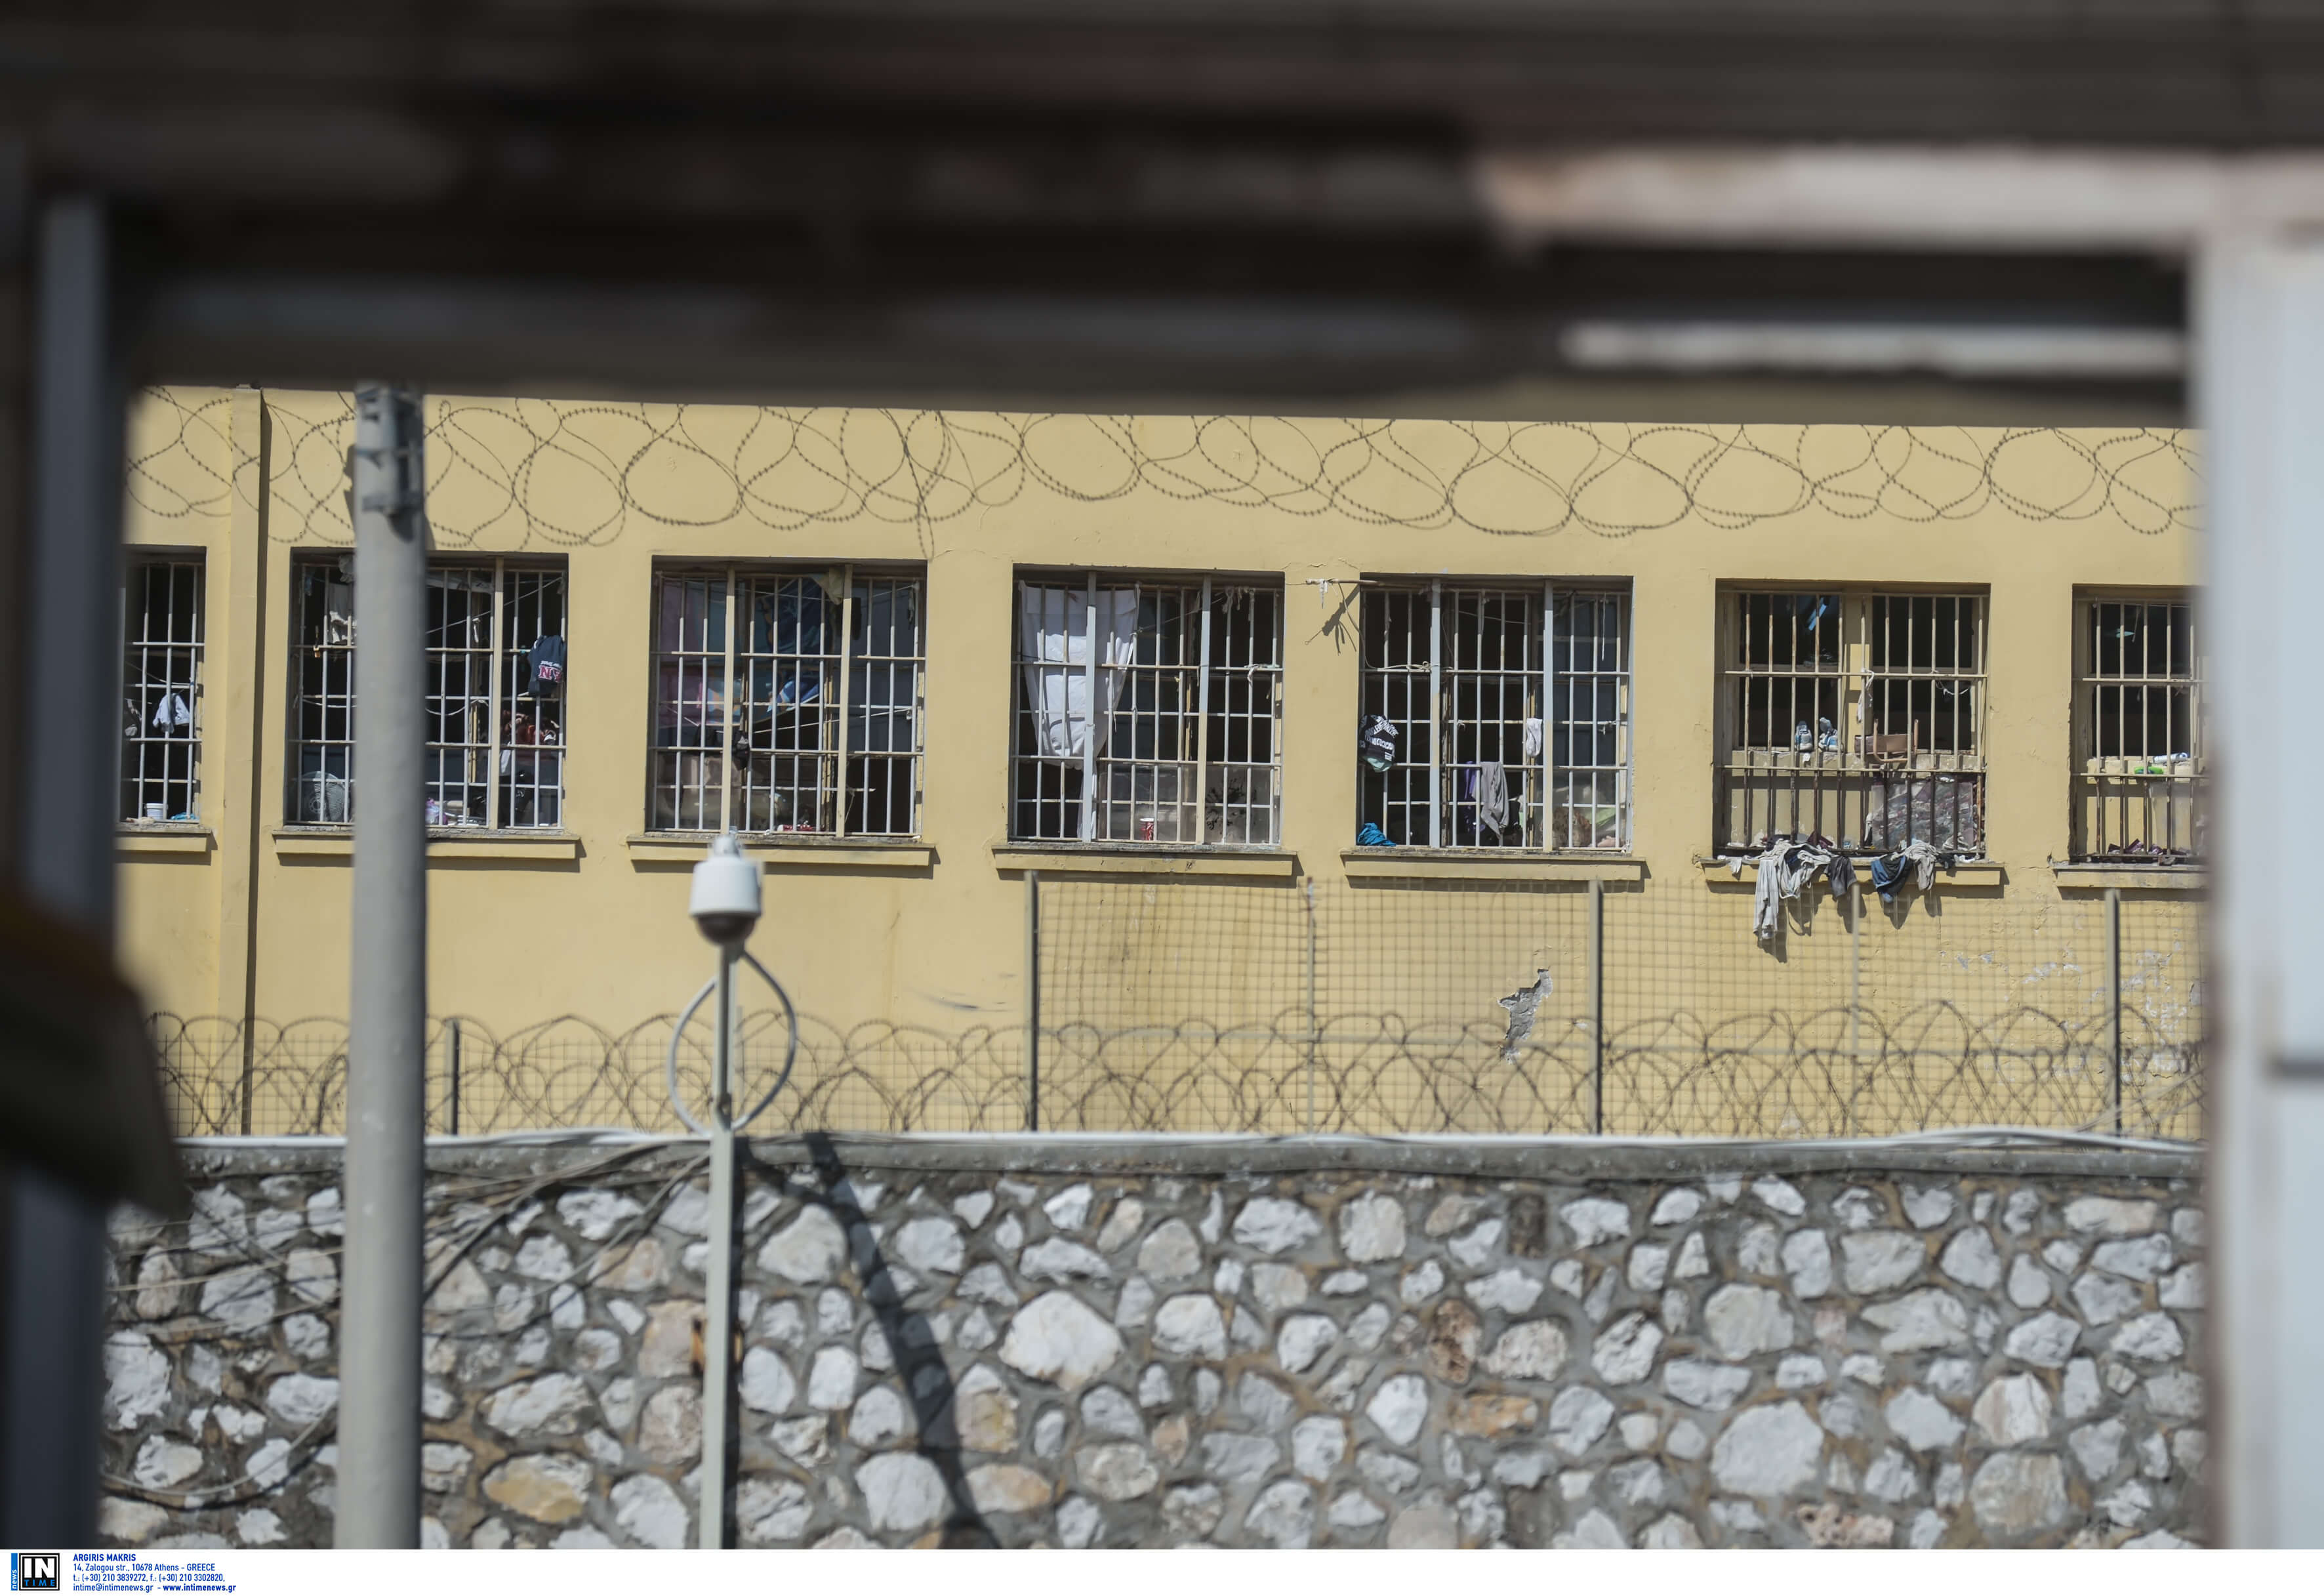 Σοκάρει πρώην κρατούμενος! “Επίδειξη δύναμης η δολοφονία μέσα στις φυλακές” – video